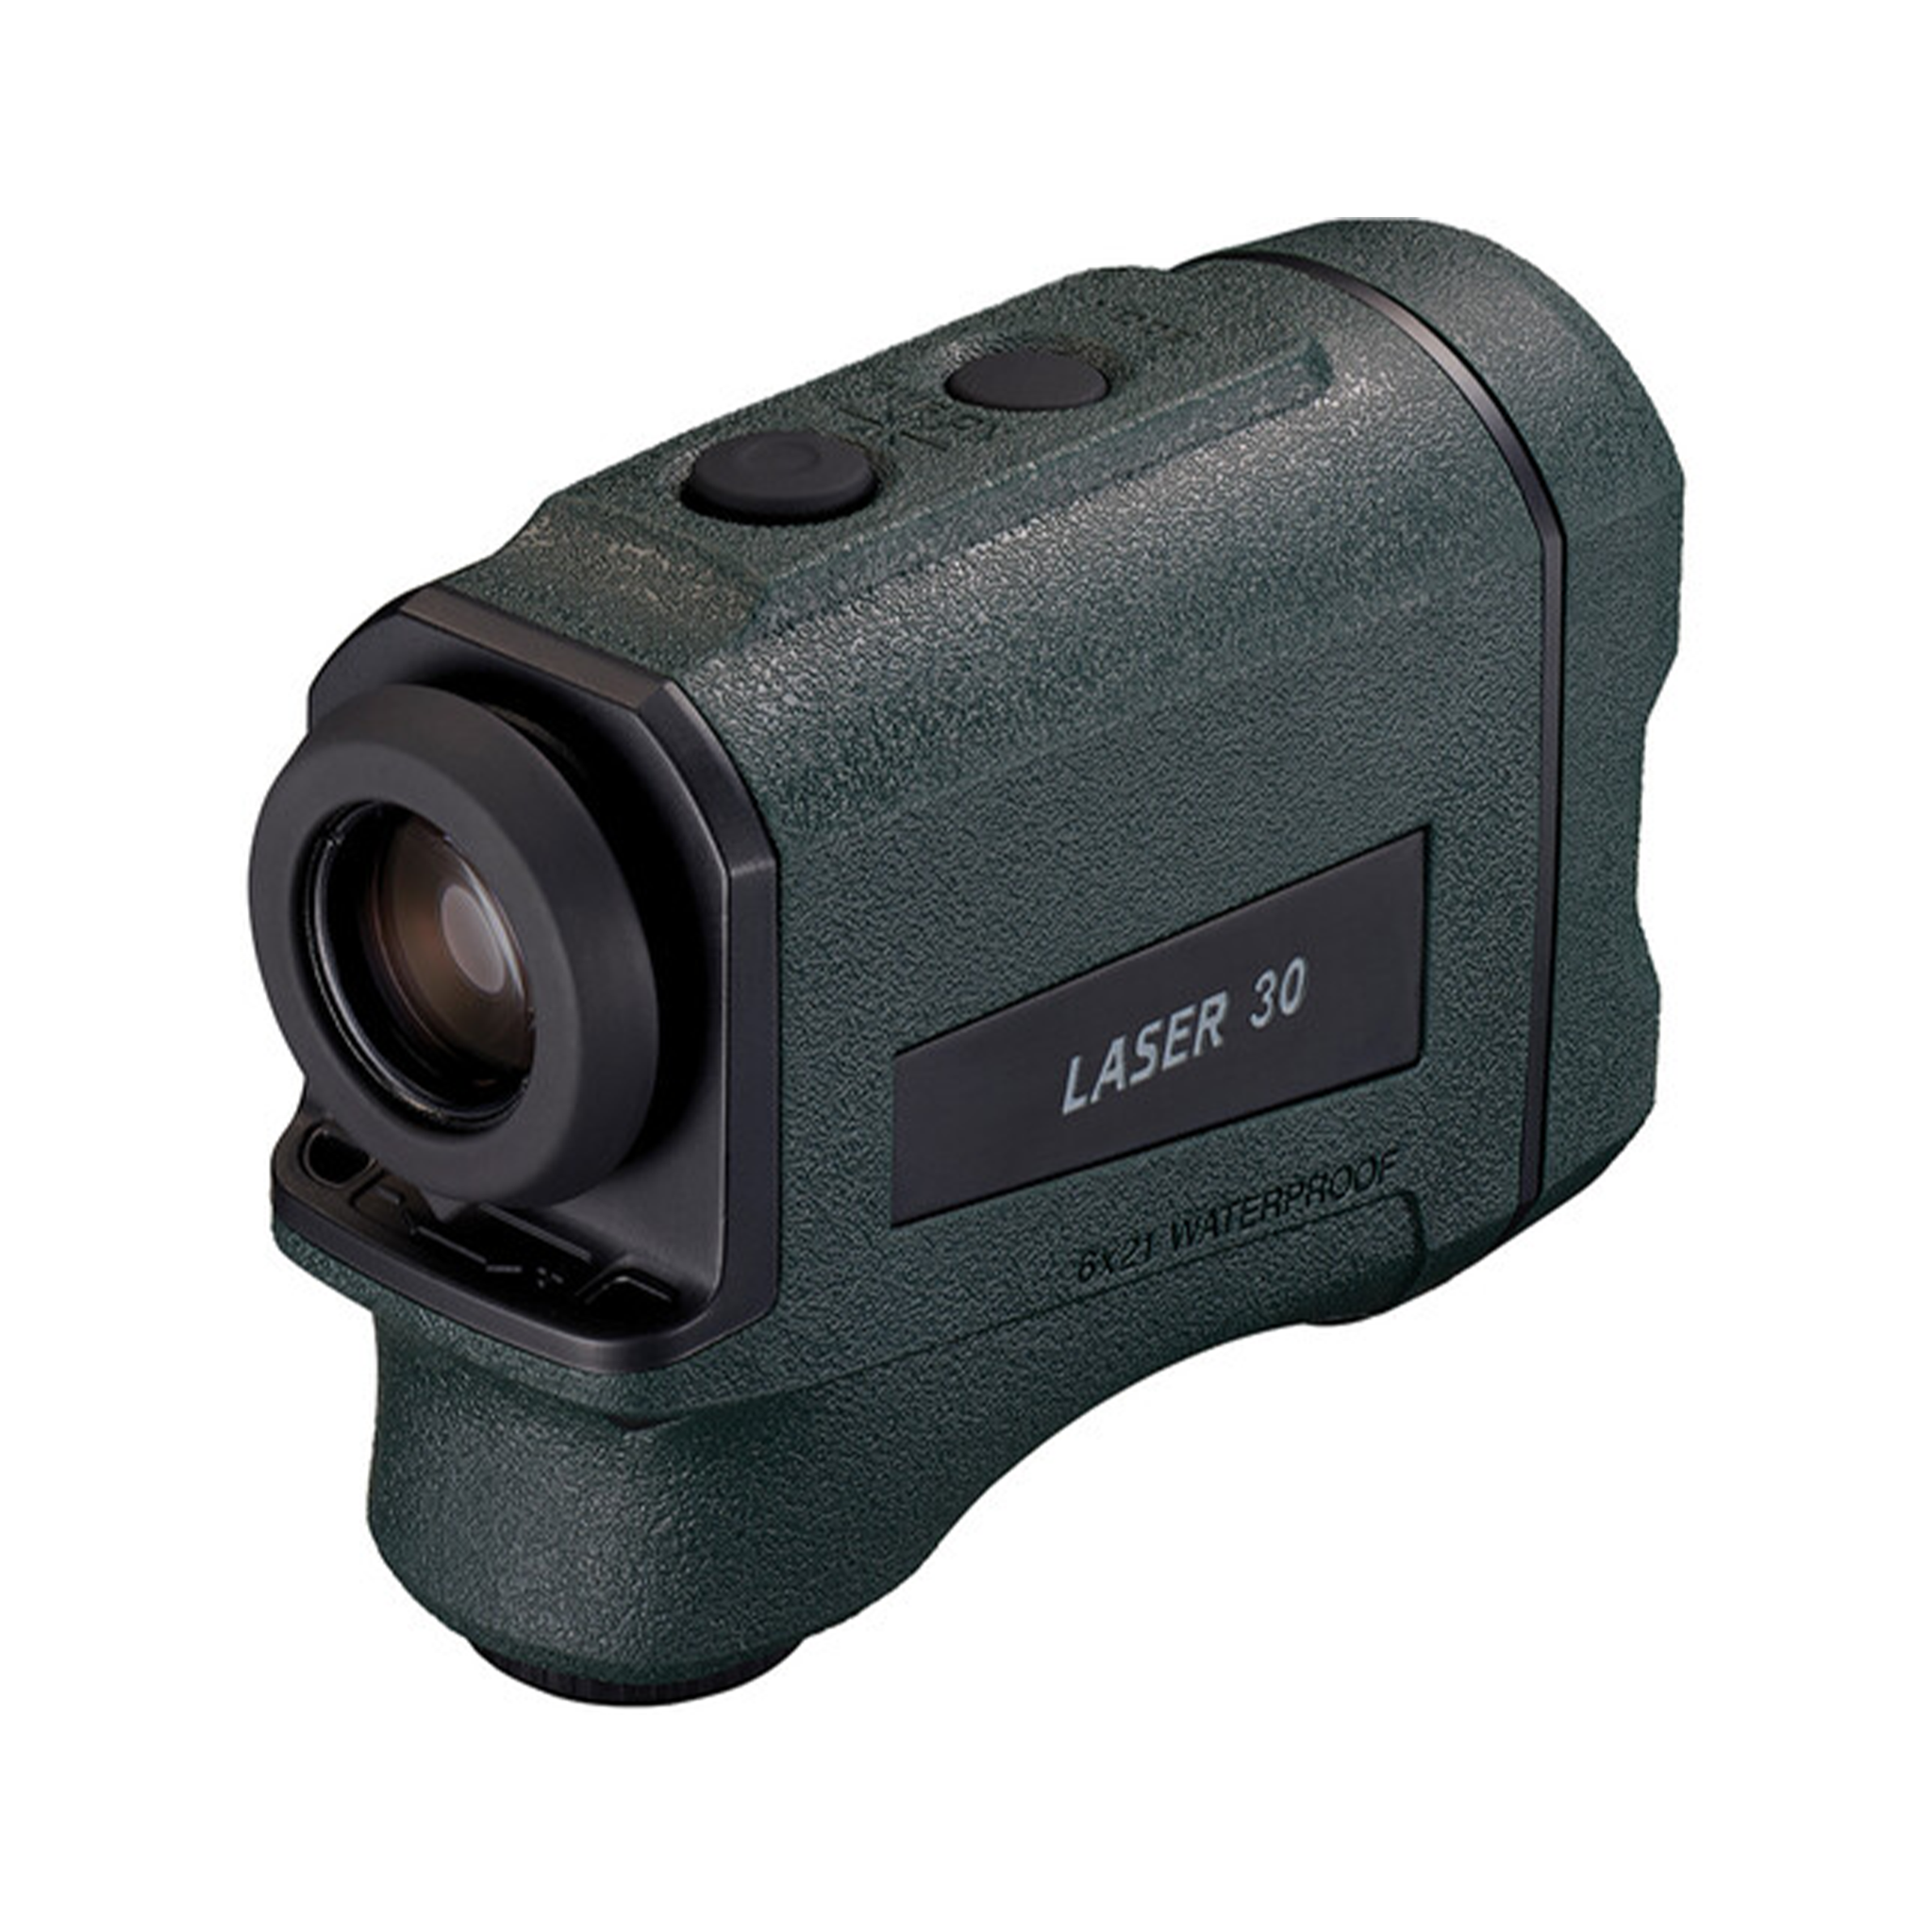 Nikon 6x21 LASER 30 Laser Rangefinder-Binoculars / Optics-futuromic